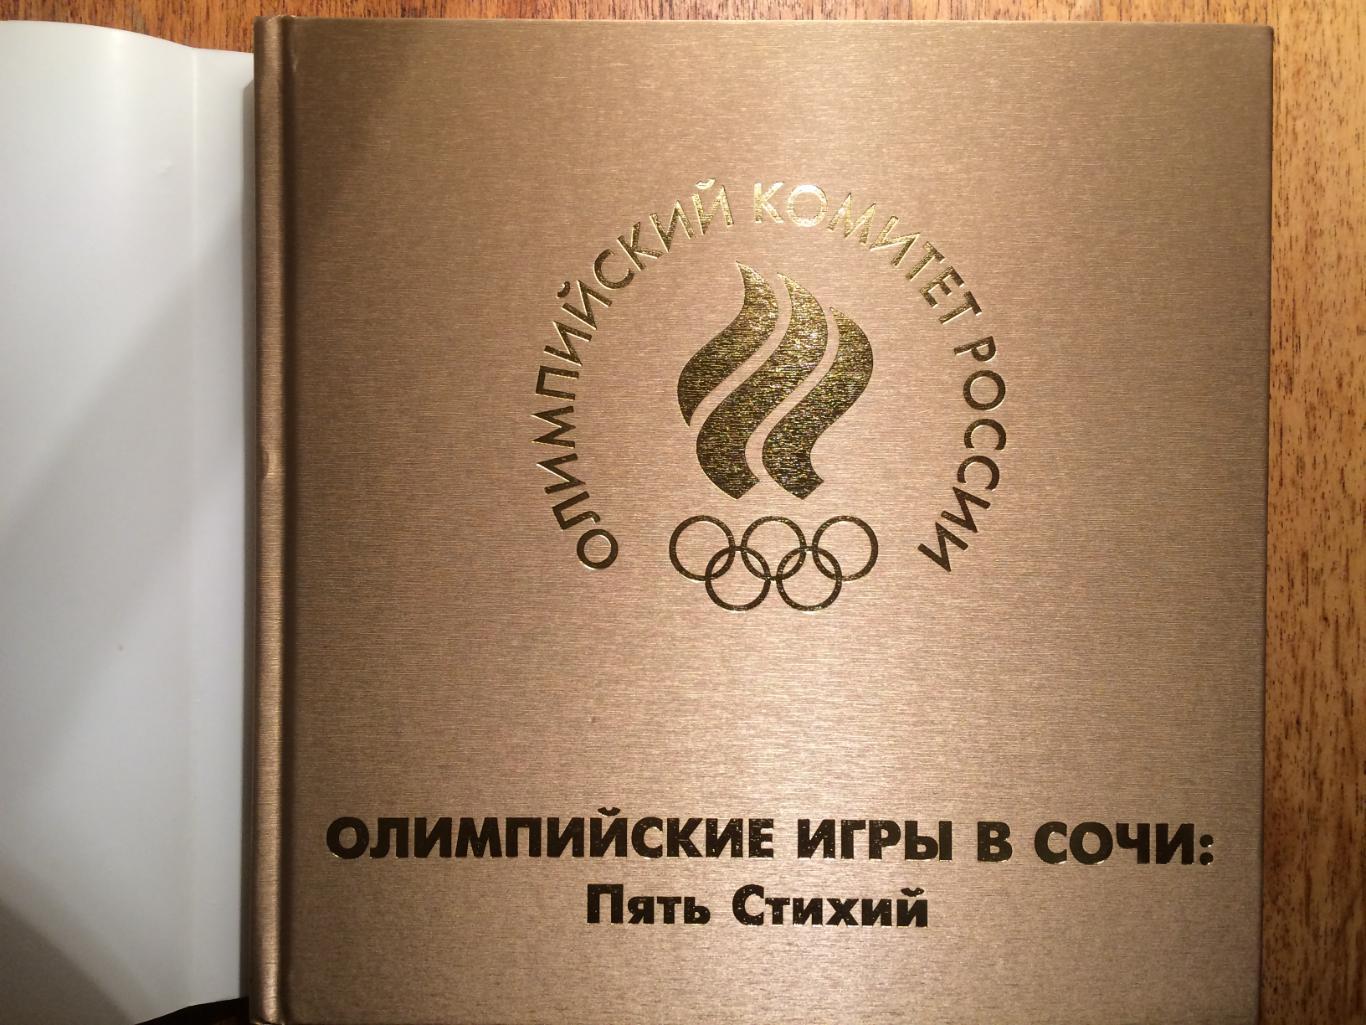 Фотоальбом Олимпийские игры в СочиПять стихий Сочи-2014 1